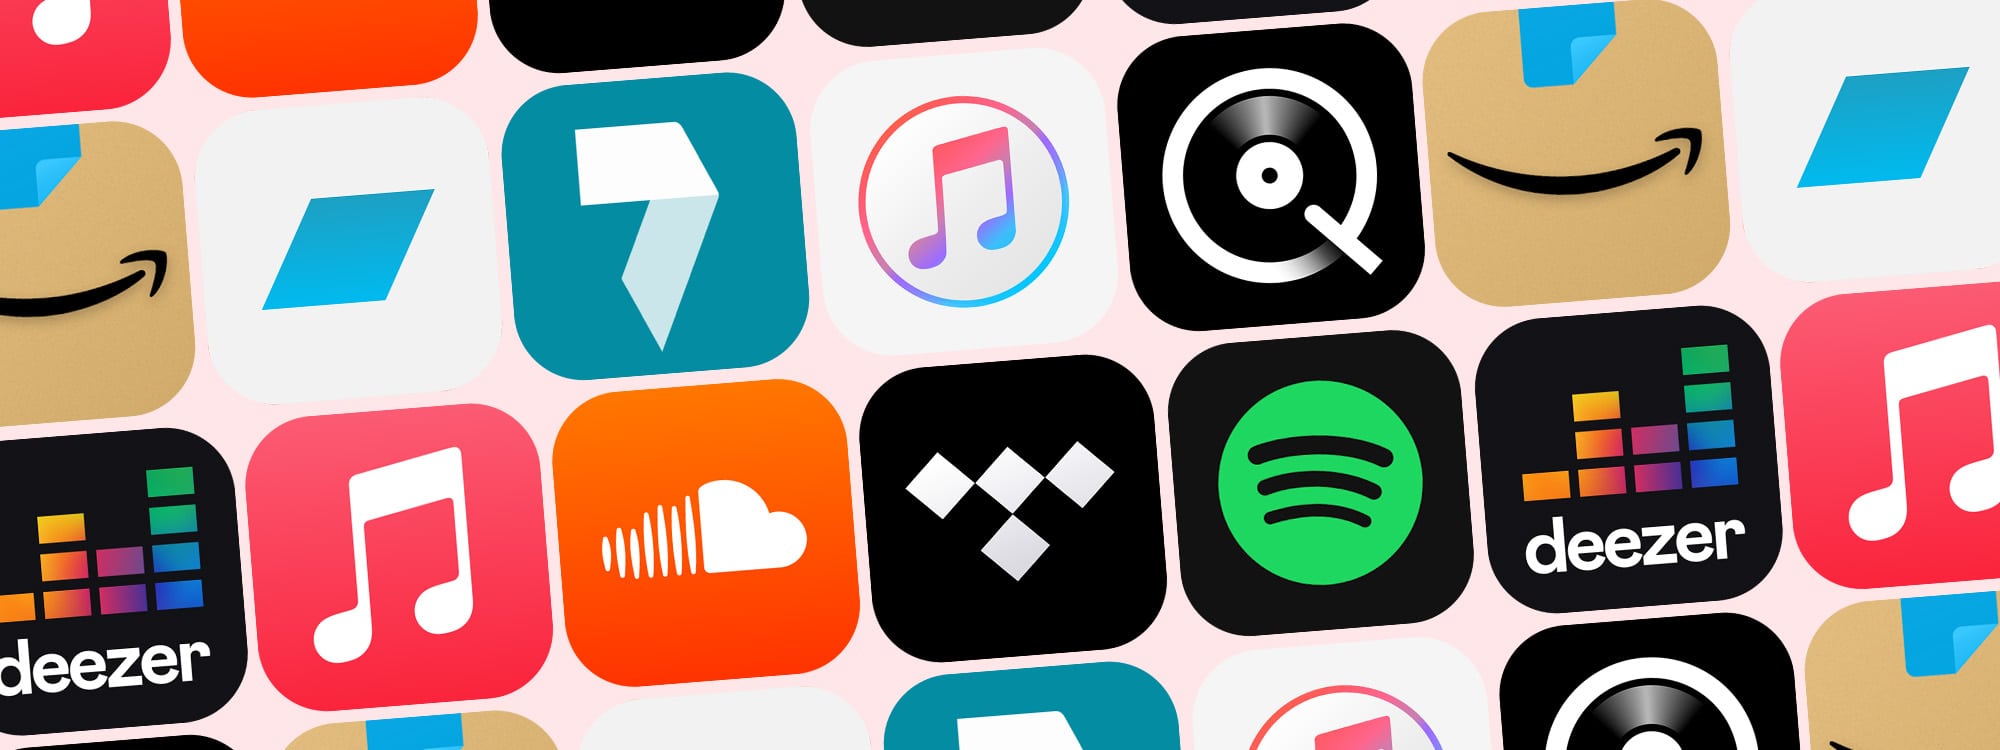 legaal muziek downloaden apps